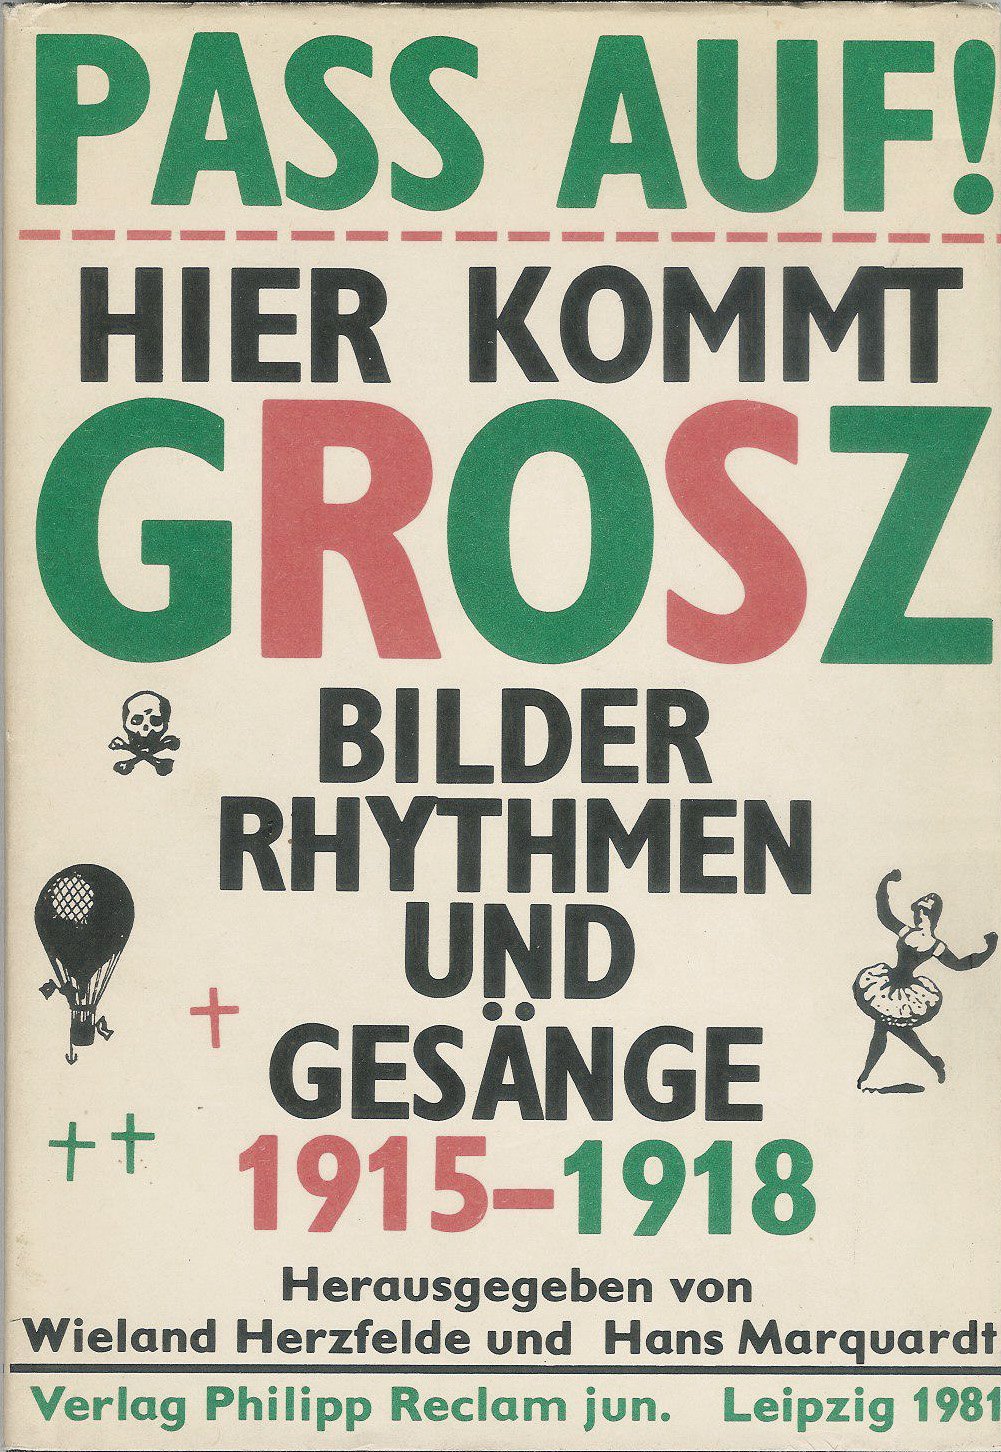 Pass Auf! Hier Kommt Grosz Bilder Rhythmen und Gesange 1915-1918.